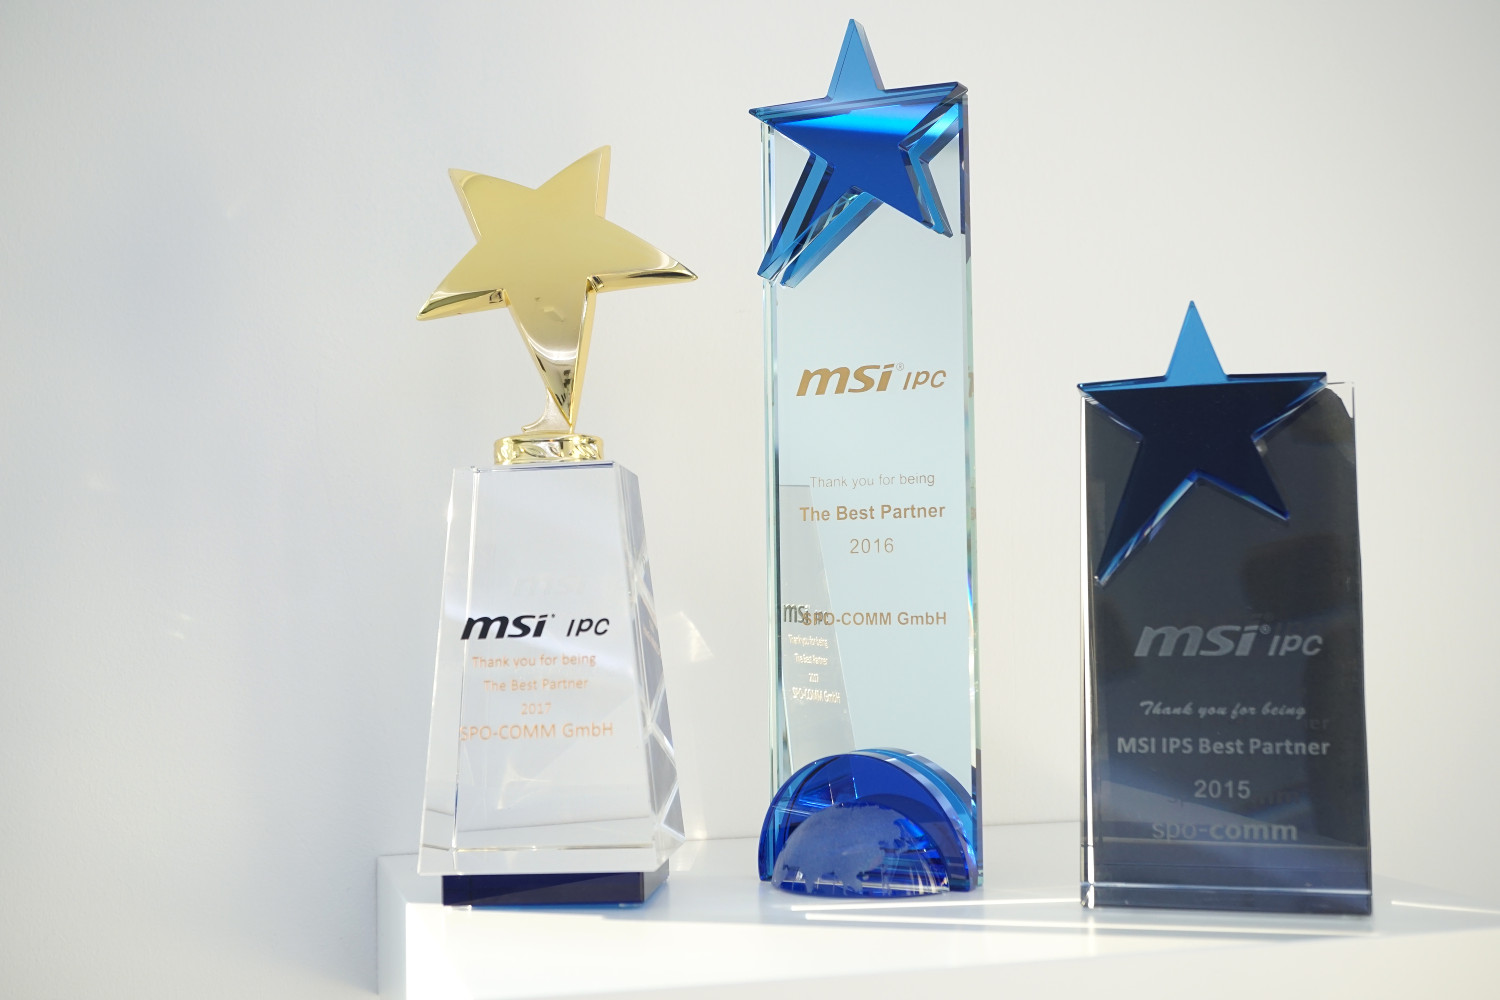 spo-comm auch 2017 mit MSI IPC Award ausgezeichnet